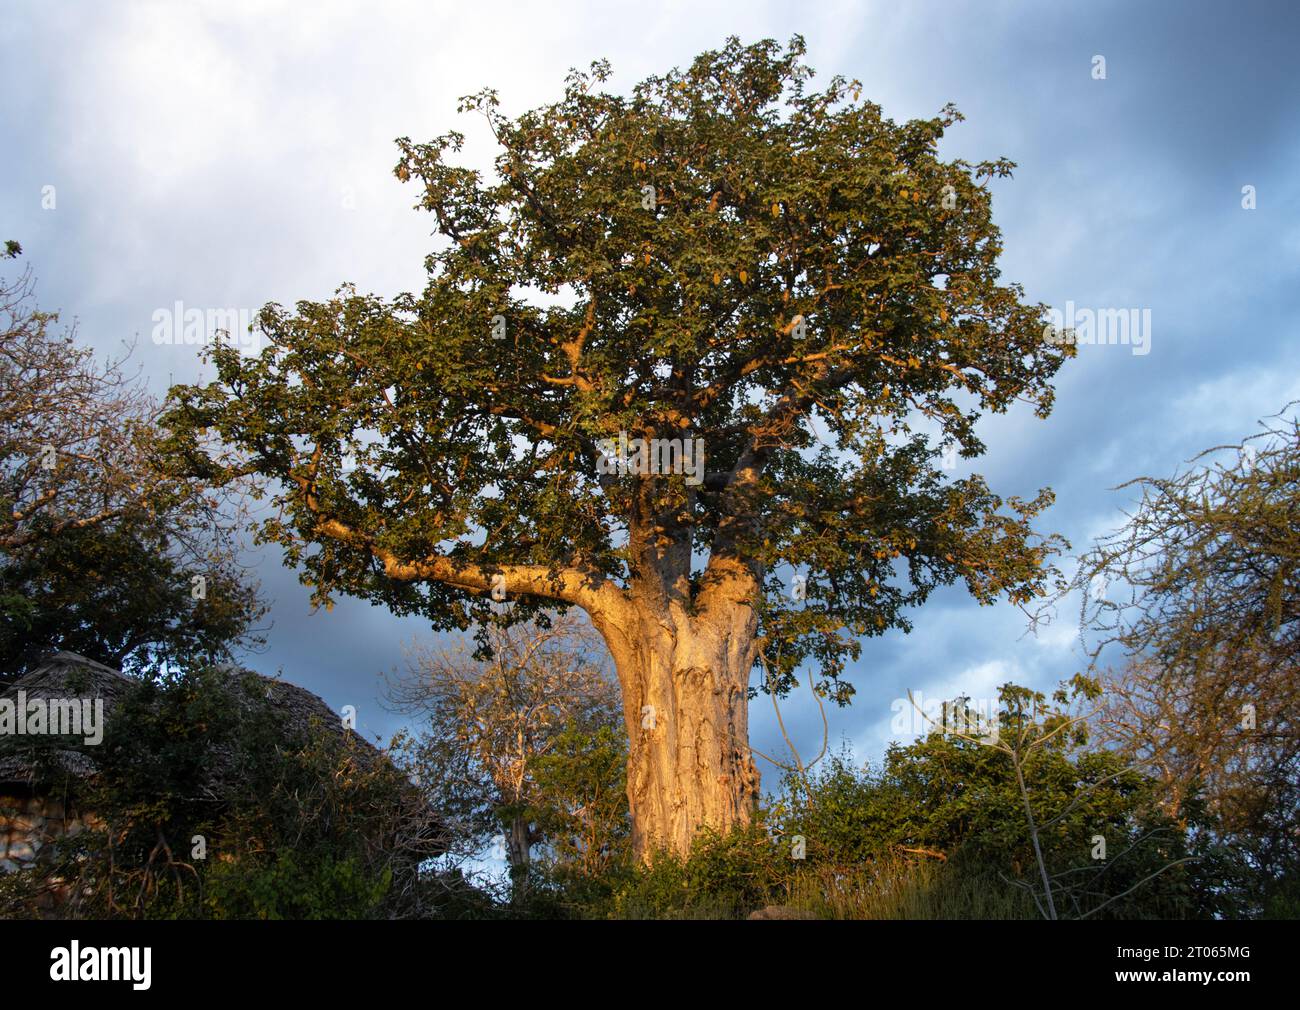 La luce del tardo pomeriggio rende la corteccia liscia di un antico Baobab lucente come un metallo. Questi alberi crescono in luoghi asciutti a bassa quota. Sono leggendari e a. Foto Stock